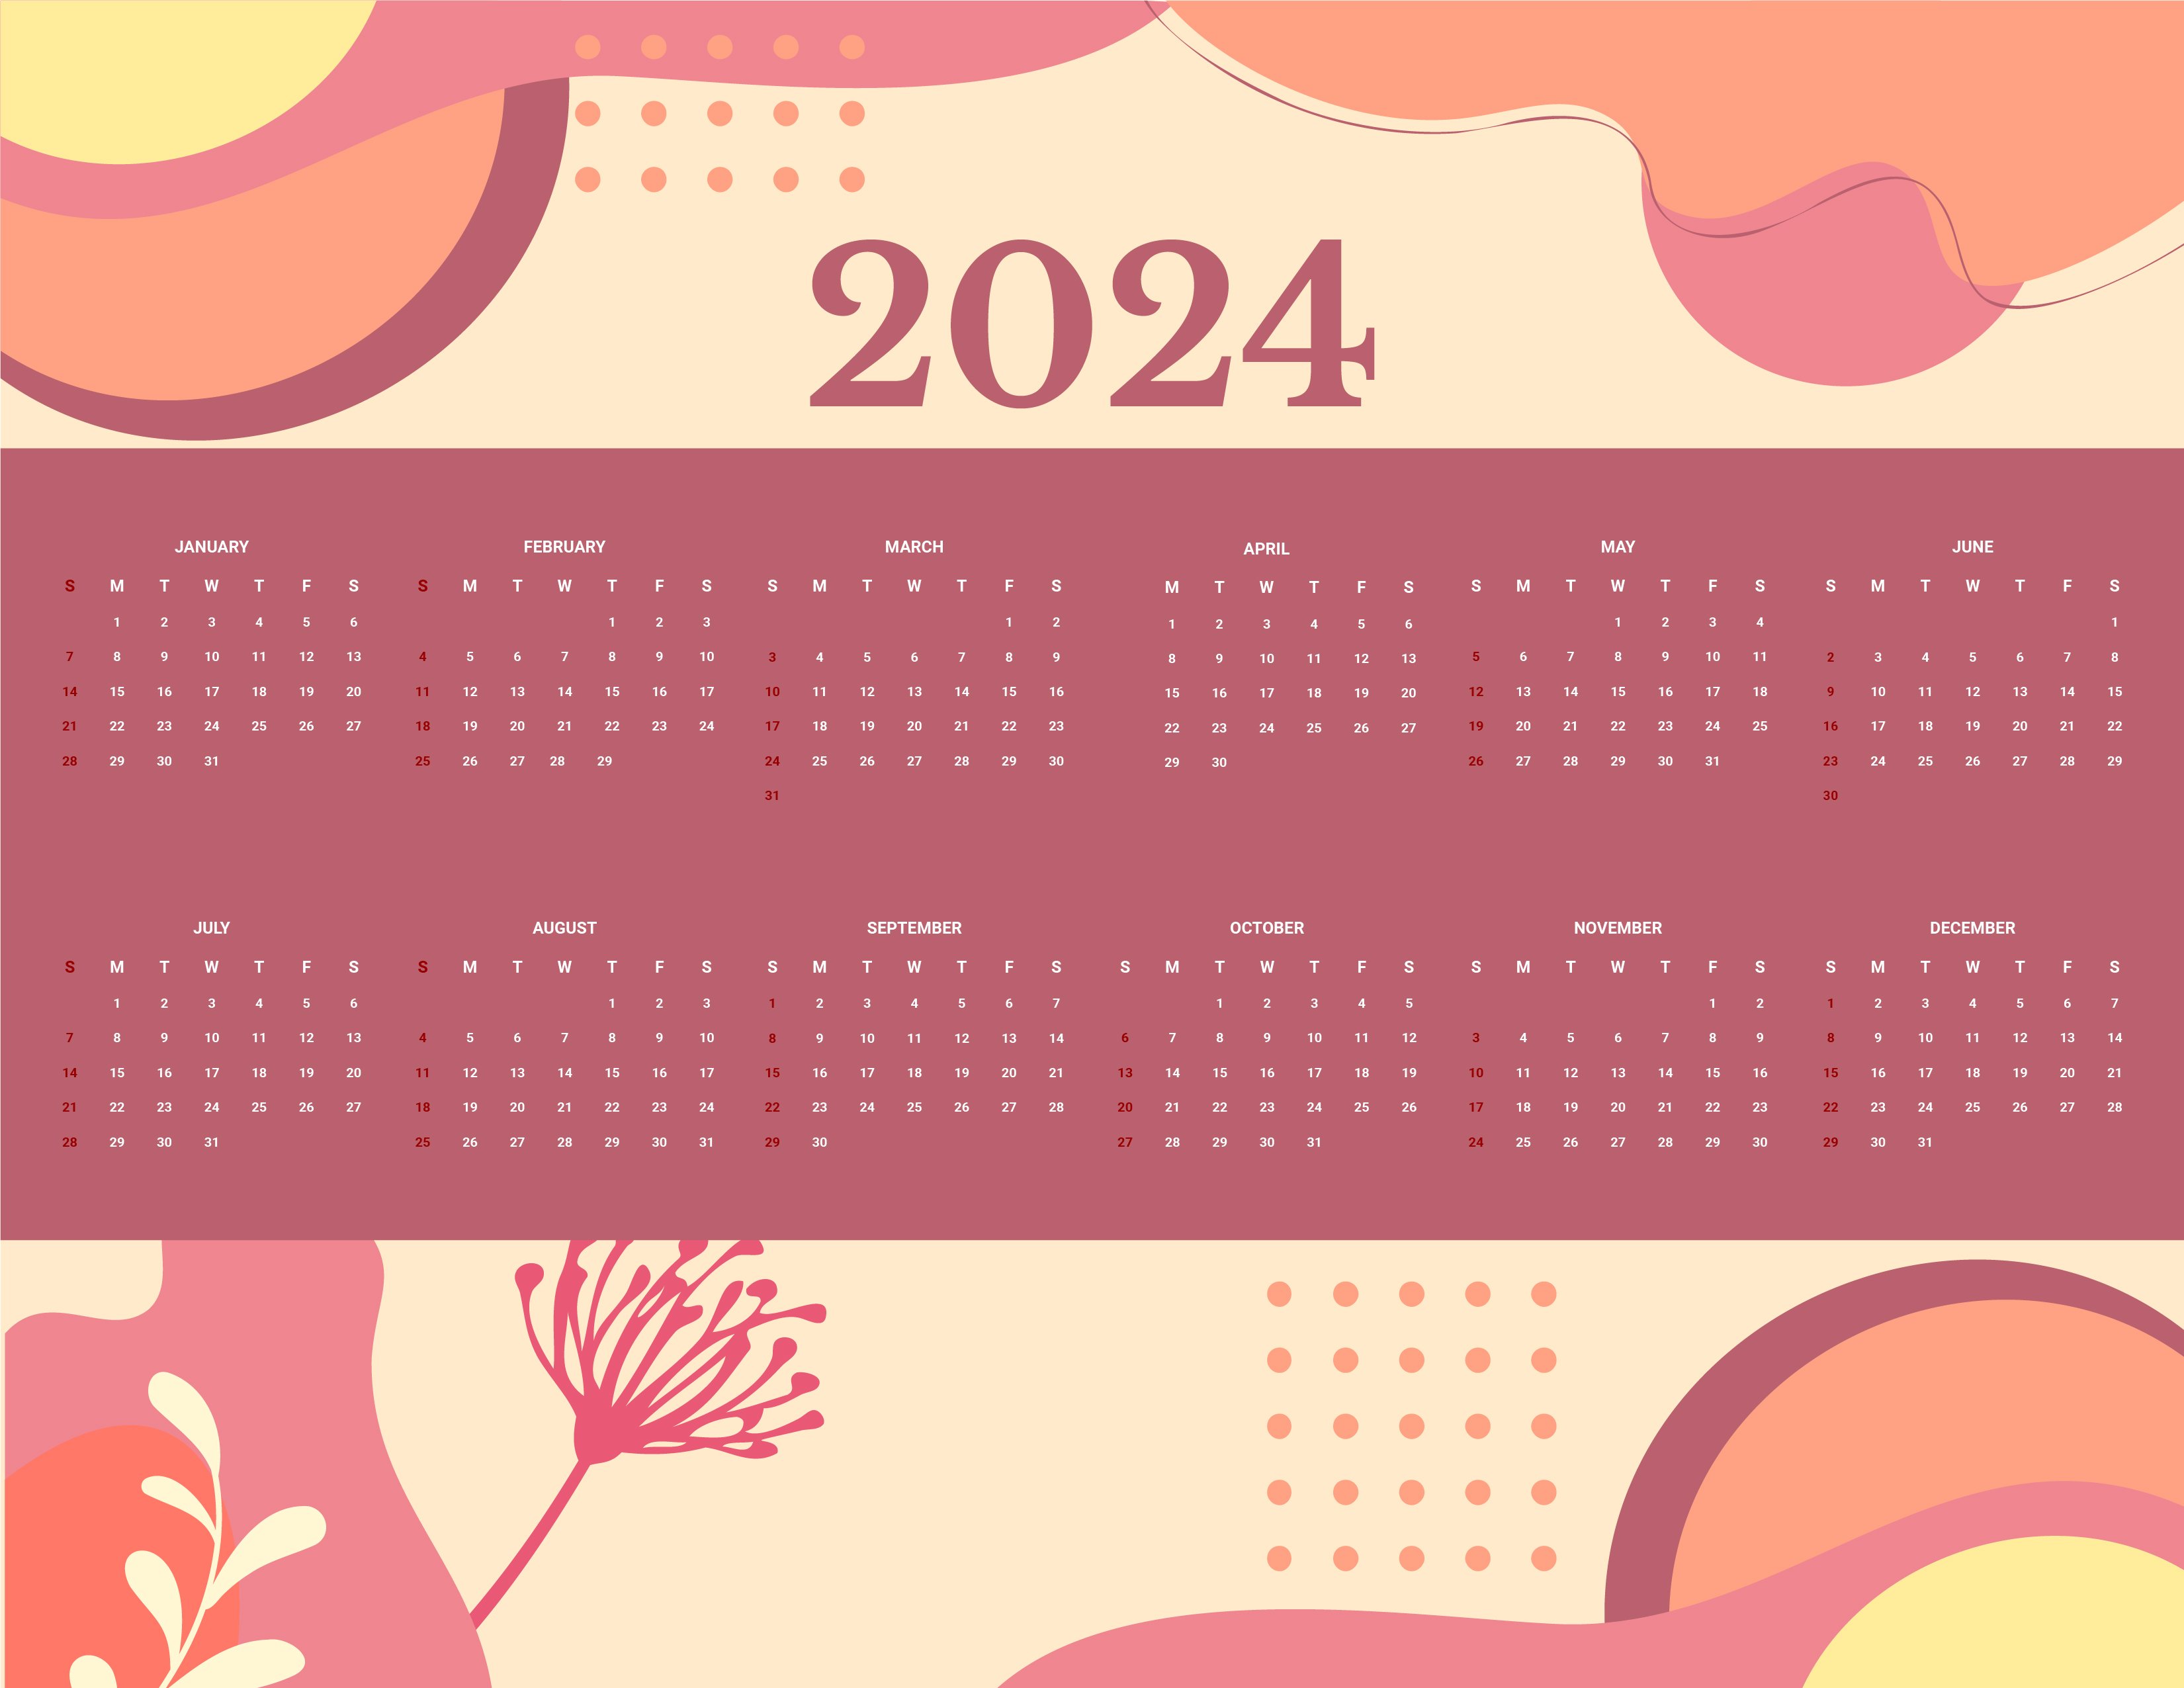 2024 Calendar Wallpapers - Top Free 2024 Calendar Backgrounds ...